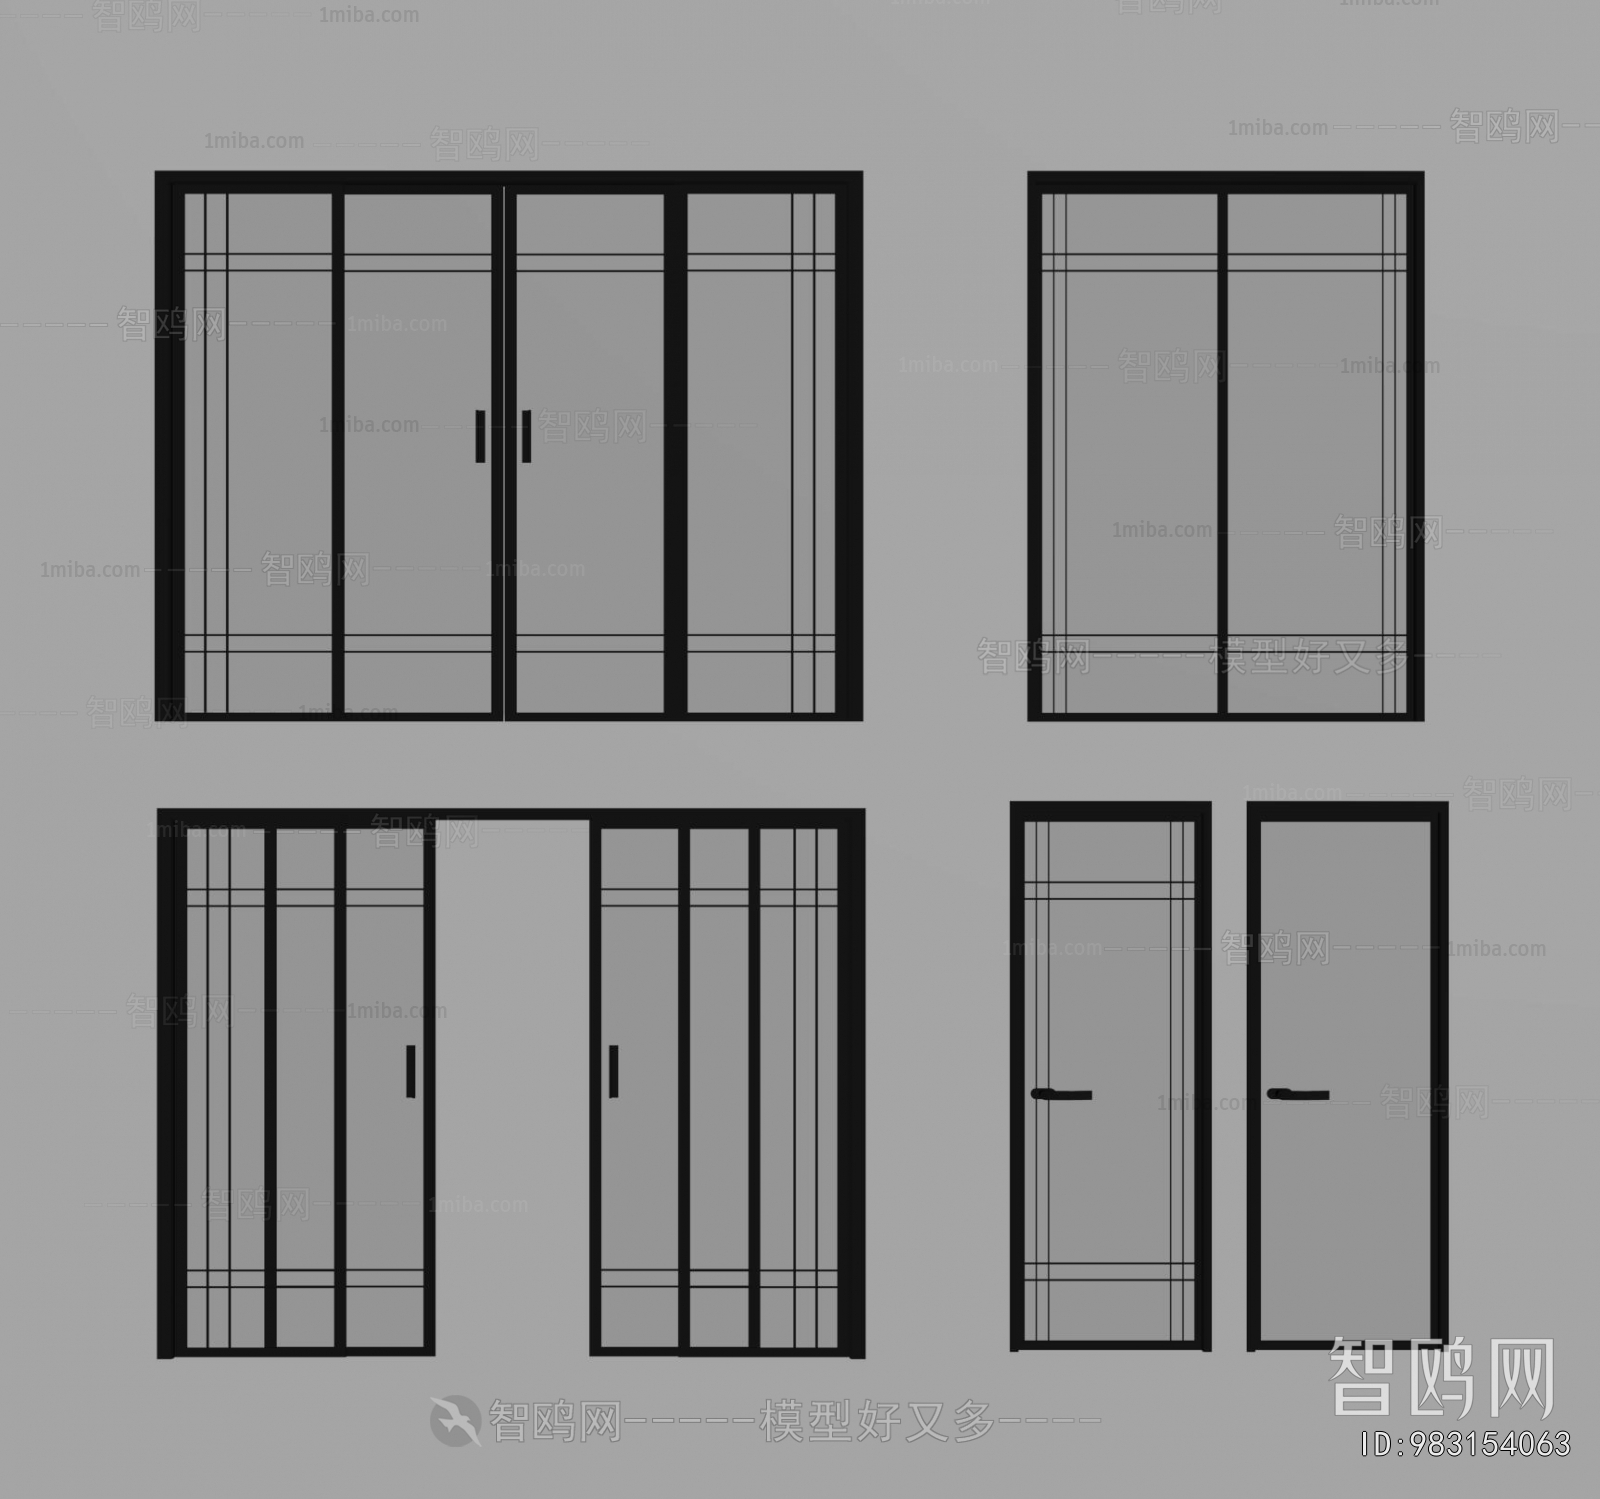 4078 Collect The Door Sketchup Model Free Download by Minh Tan | Sketchup  model, Entry door designs, Doors